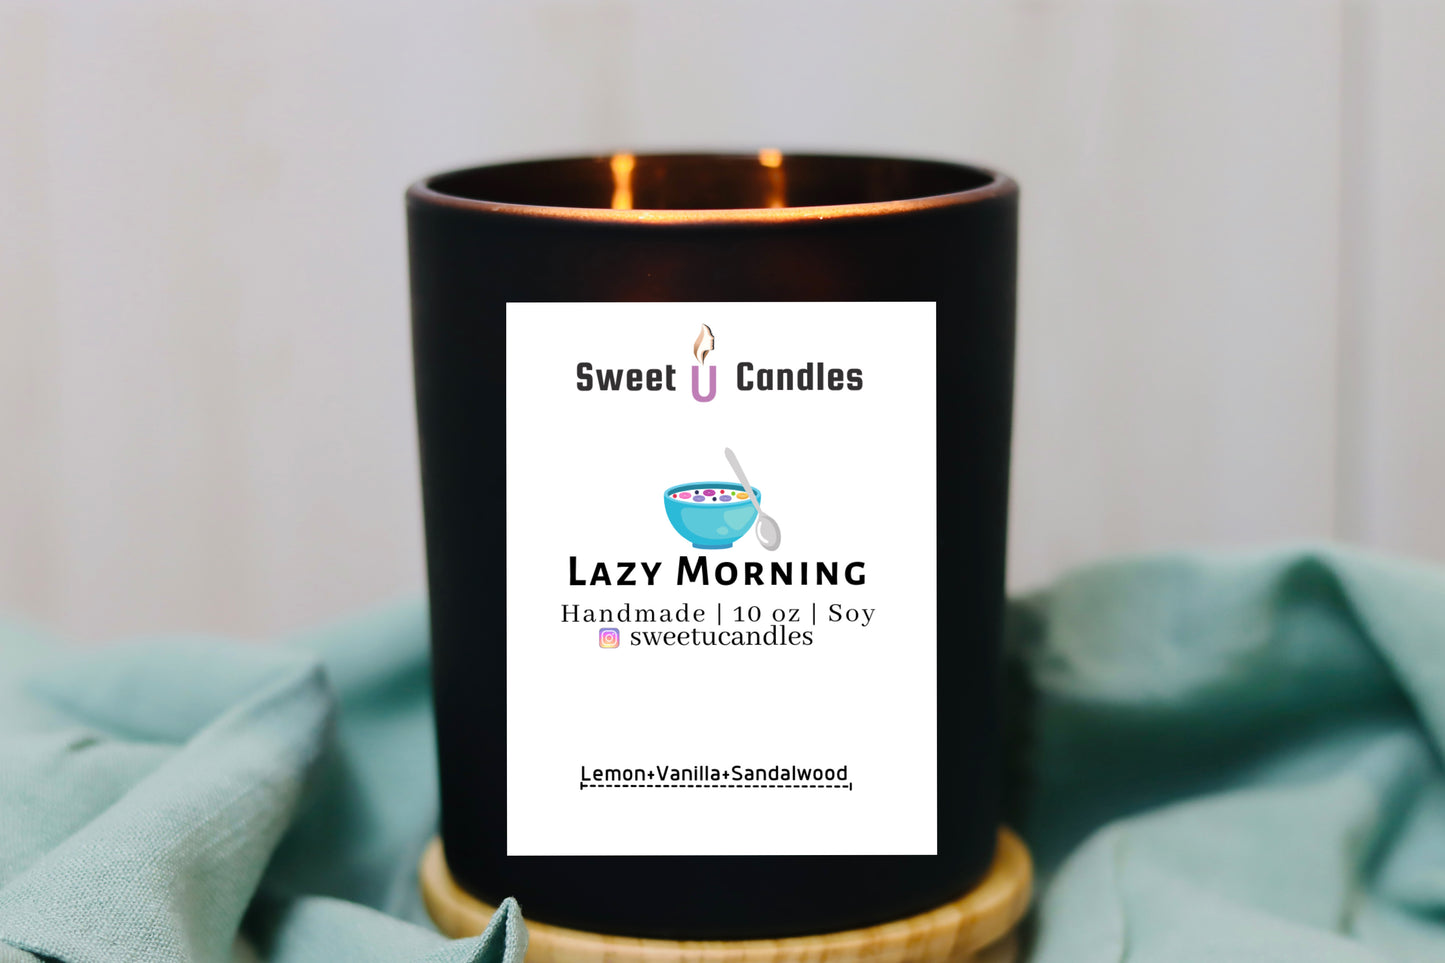 LAZY MORNING - Sweet U Candles 